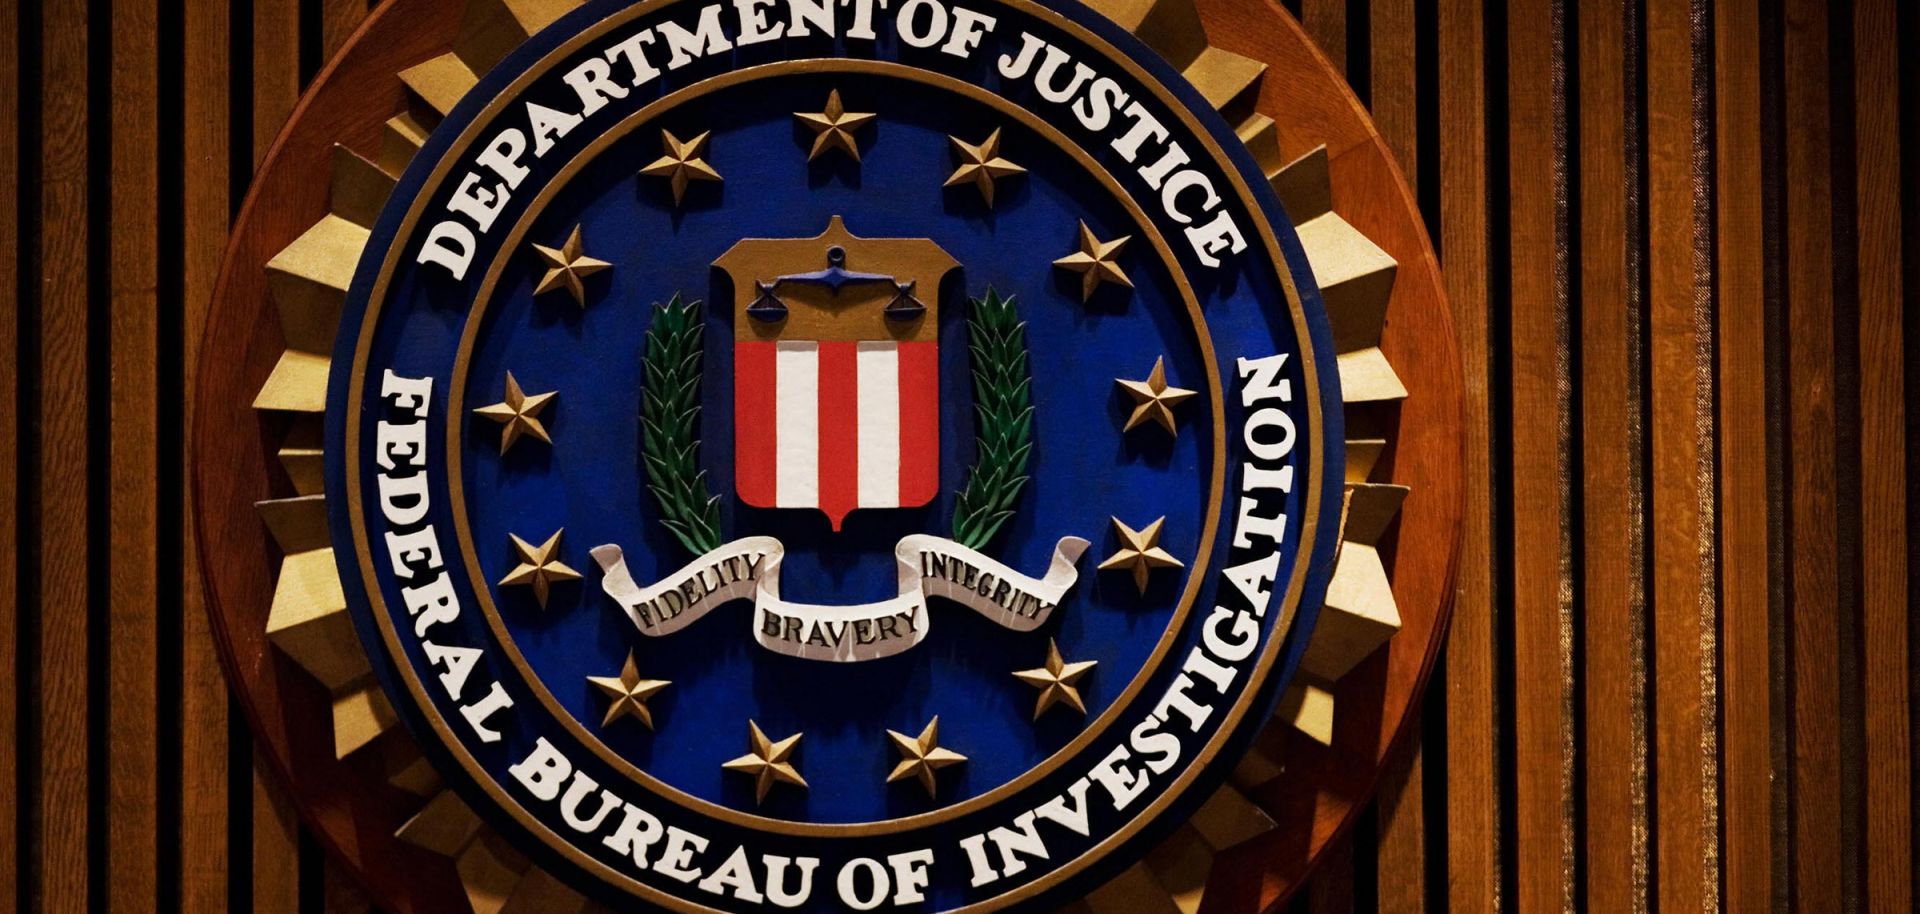 The Federal Bureau of Investigation crest inside the J. Edgar Hoover FBI Building in Washington, DC.